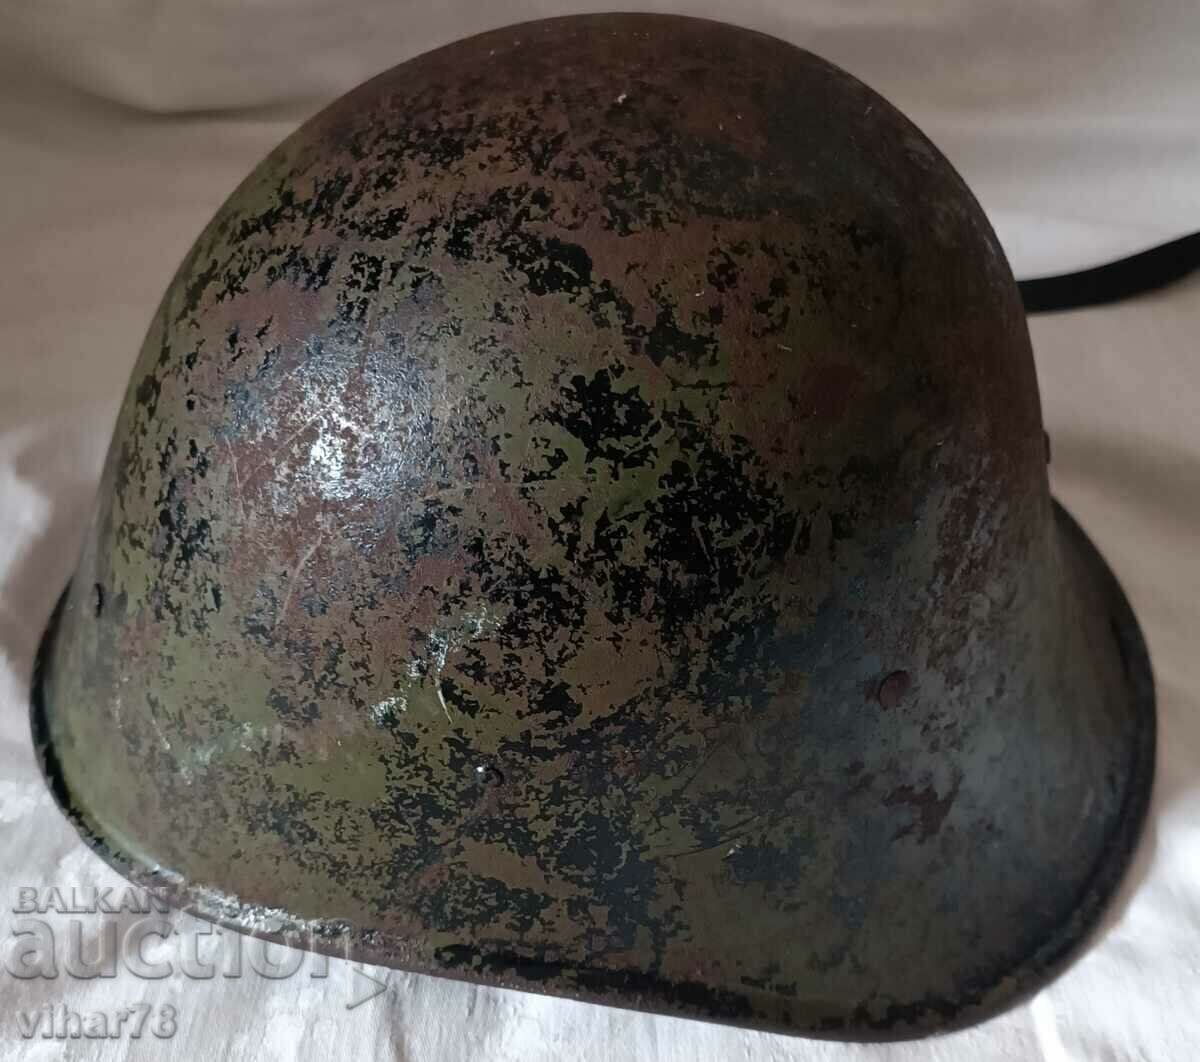 Old military helmet